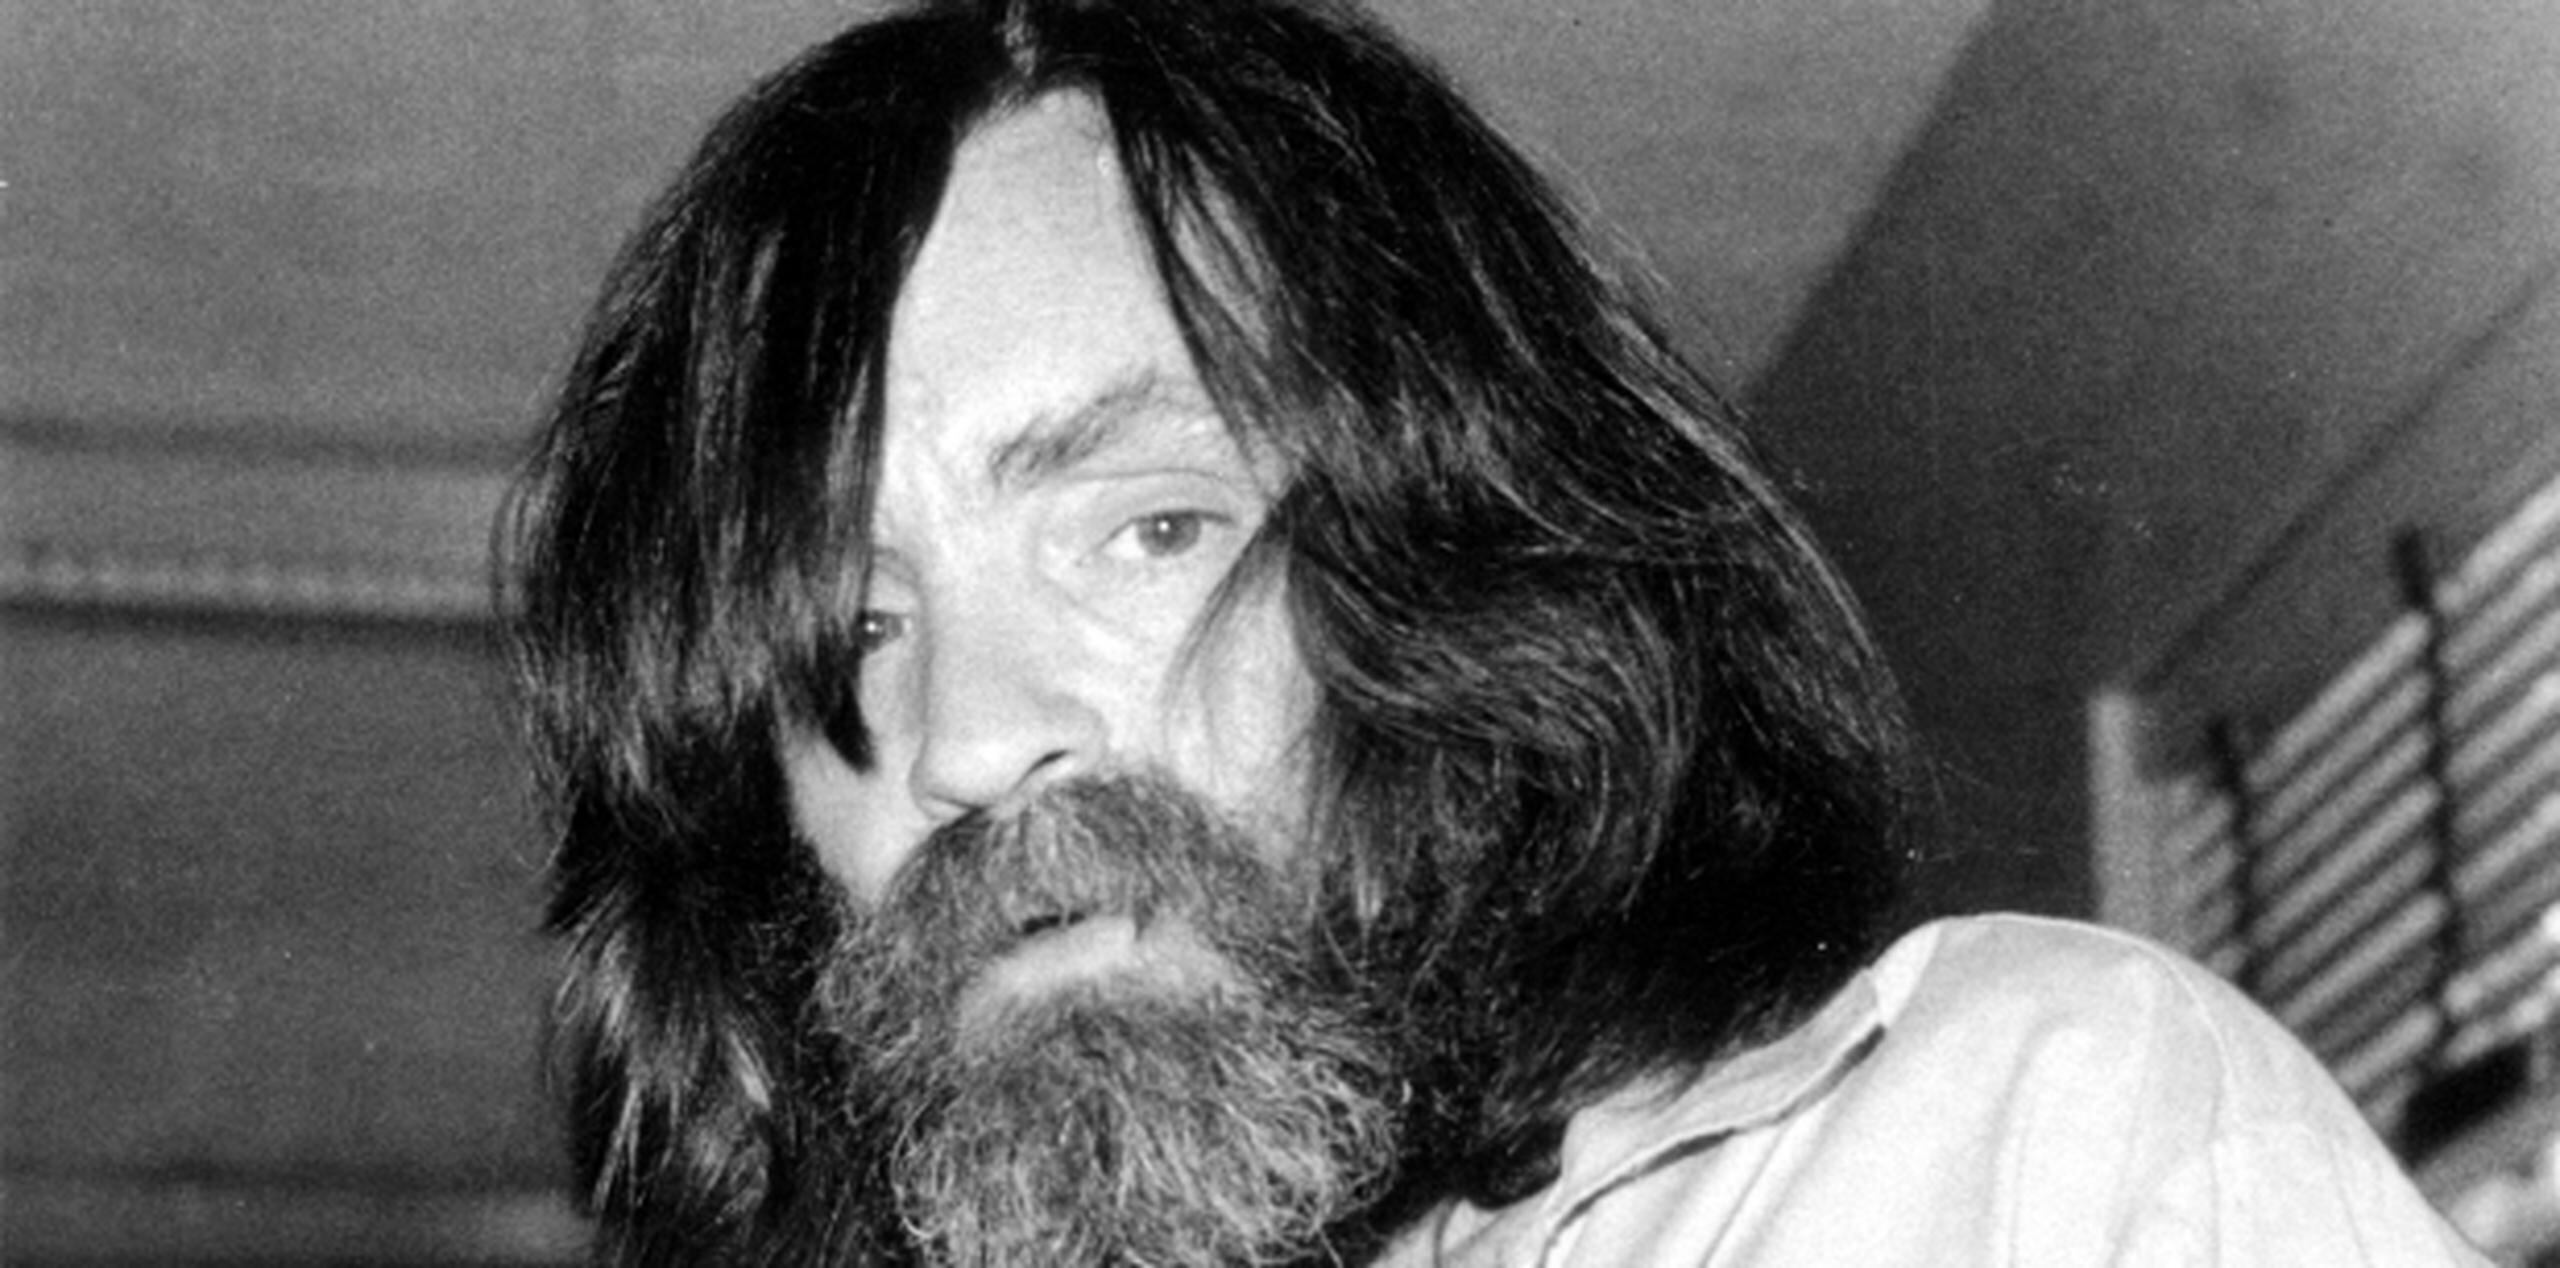 Para algunos, Manson fue el asesino más notorio de todos los tiempos. (AP)